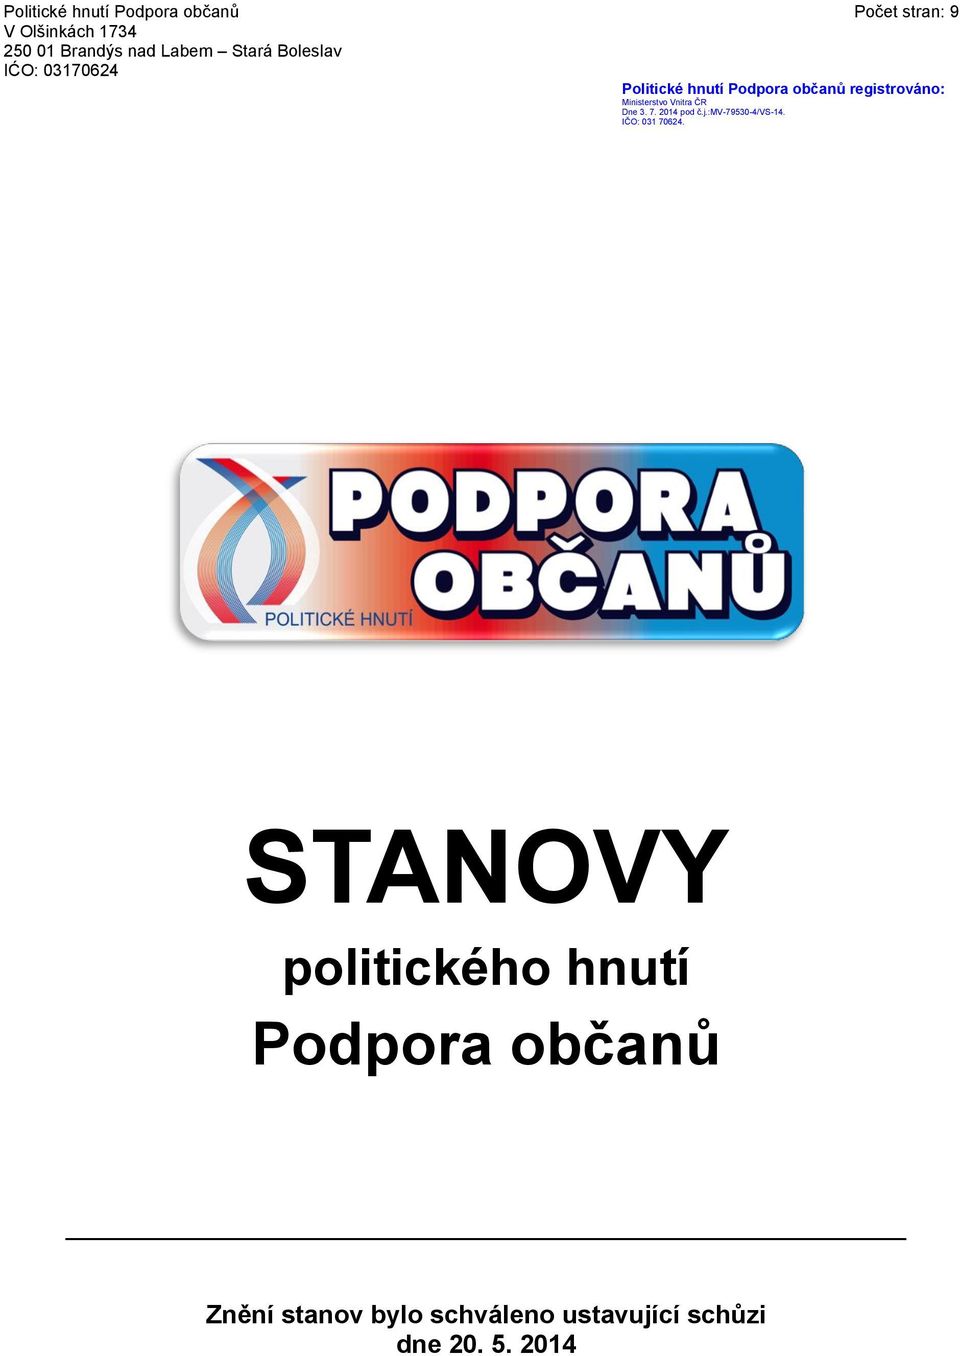 Ministerstvo Vnitra ČR Dne 3. 7. 2014 pod č.j.:mv-79530-4/vs-14. IČO: 031 70624.